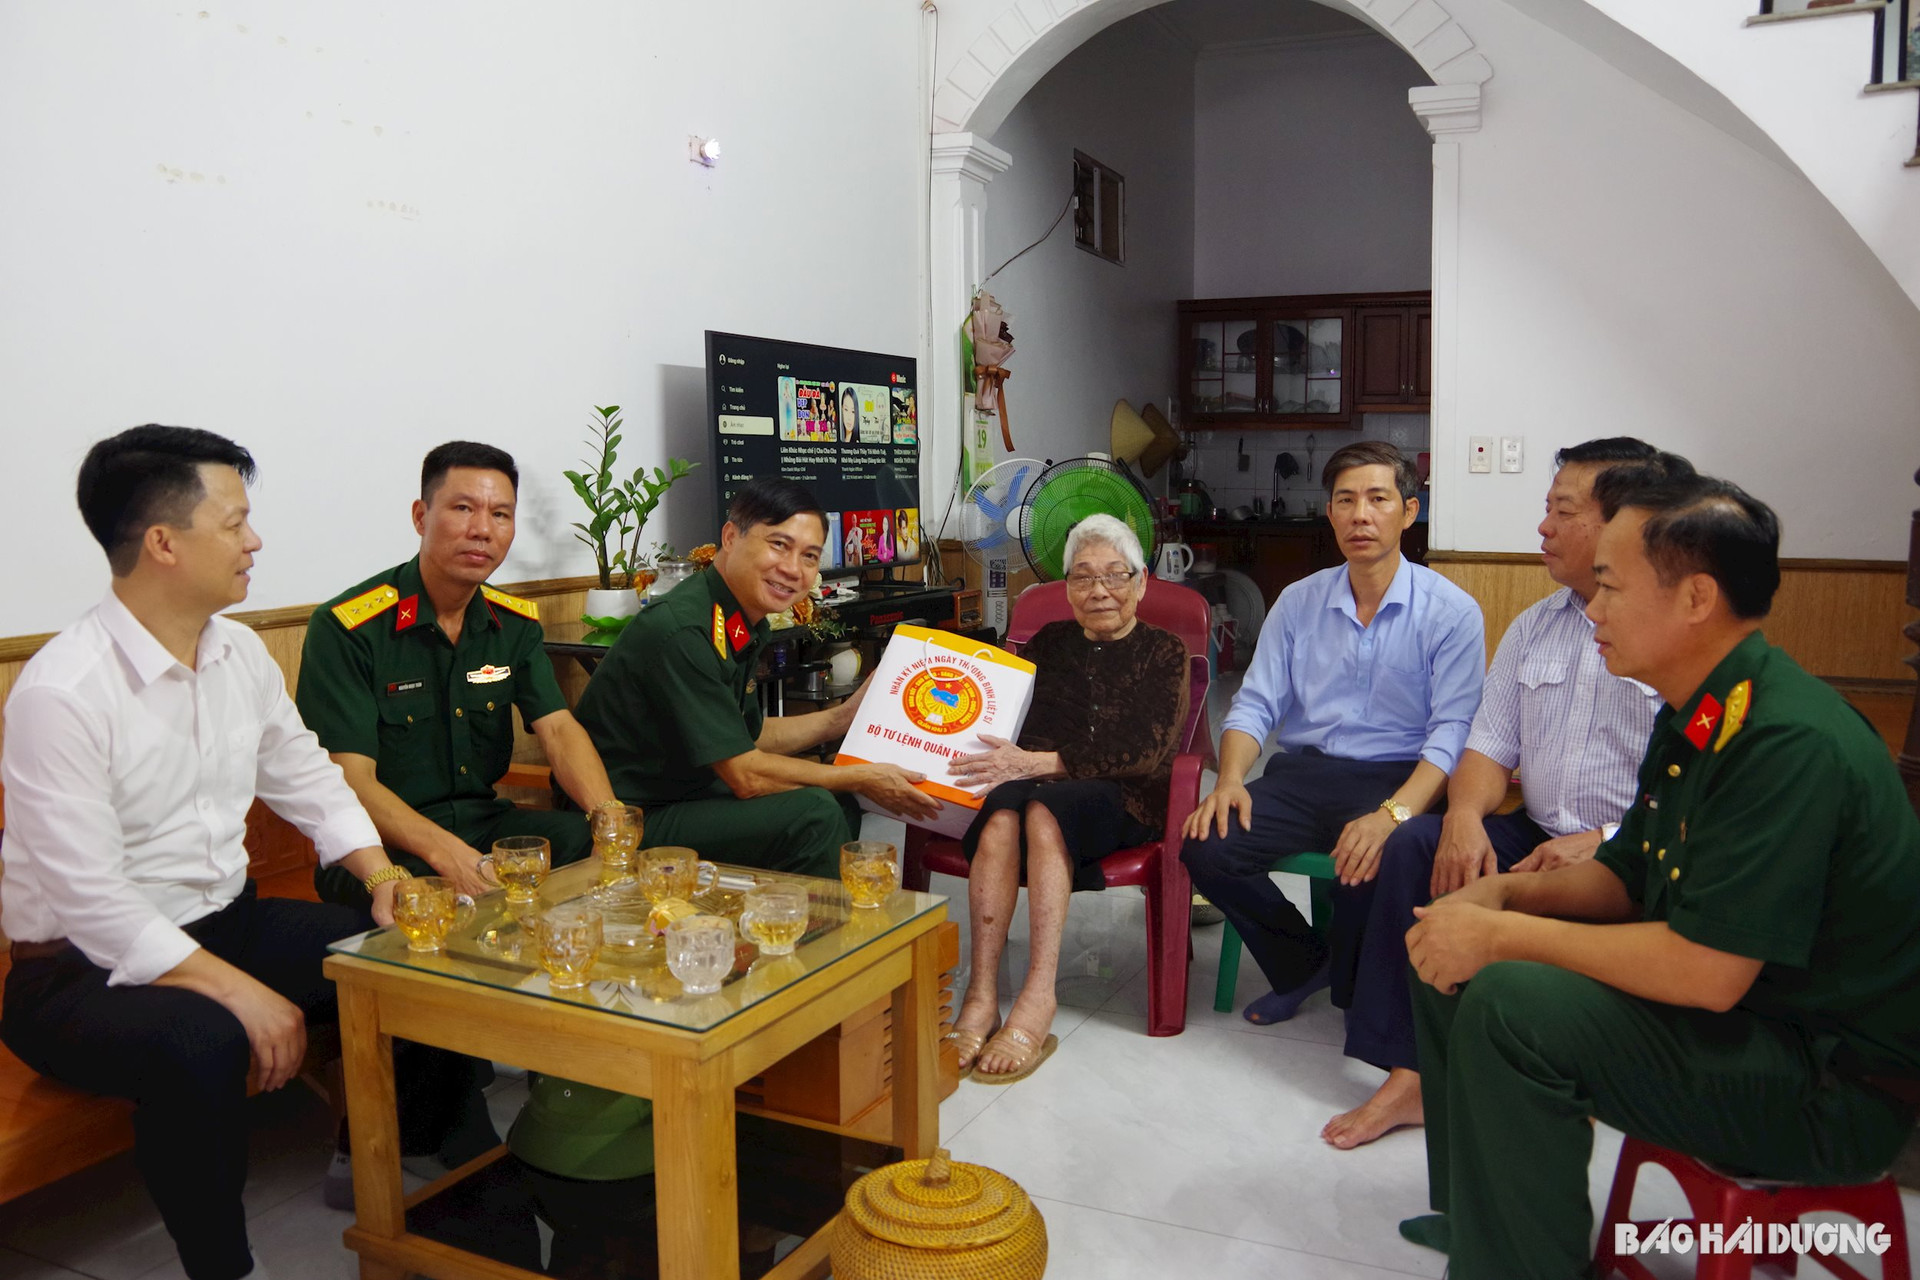 Đại tá Bùi Vinh Được, Phó Chính uỷ Bộ Chỉ huy quân sự tỉnh trao quà cho bà Vũ Thị Tĩnh, sinh năm 1938, vợ liệt sĩ, ở thị trấn Nam Sách